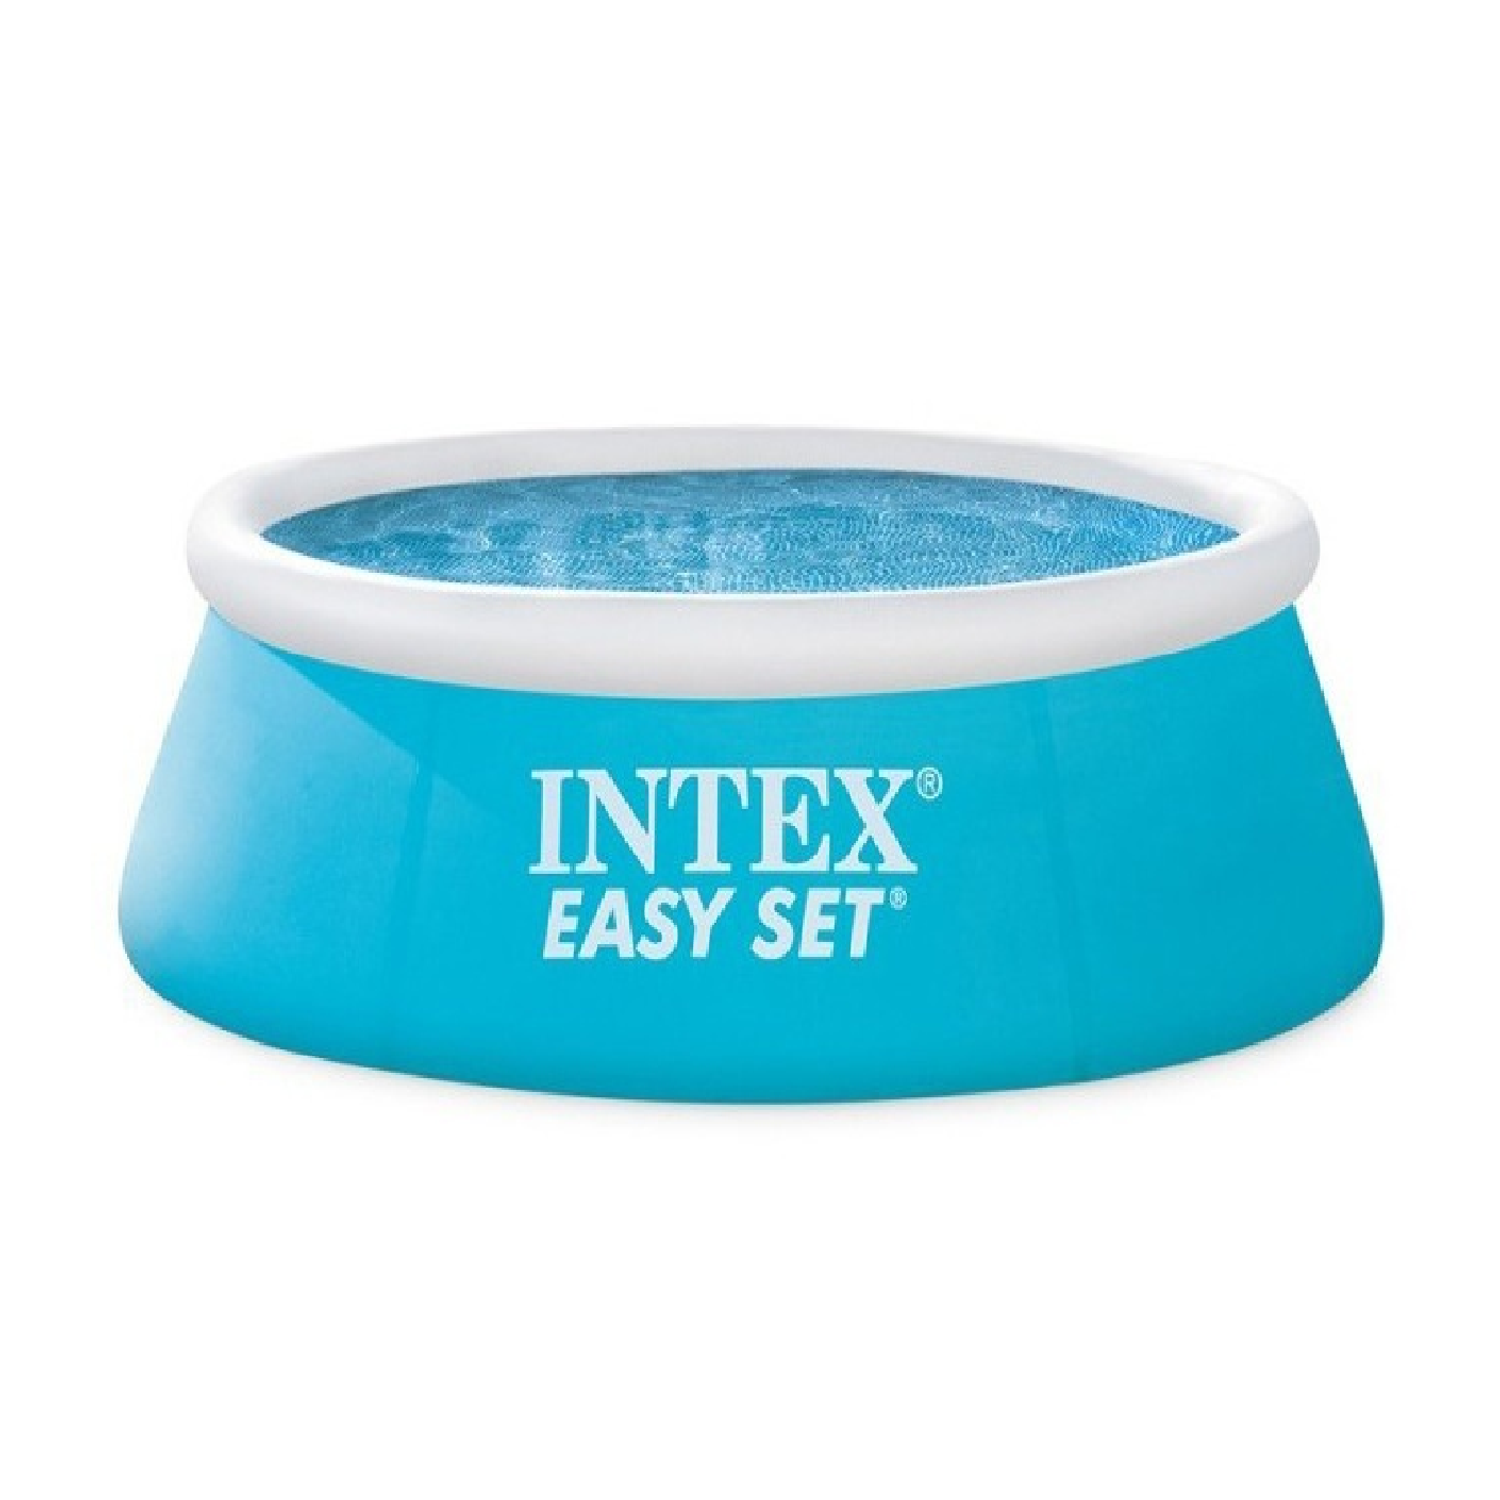 Надувной бассейн Intex изи сет 183х51 см - фото 1